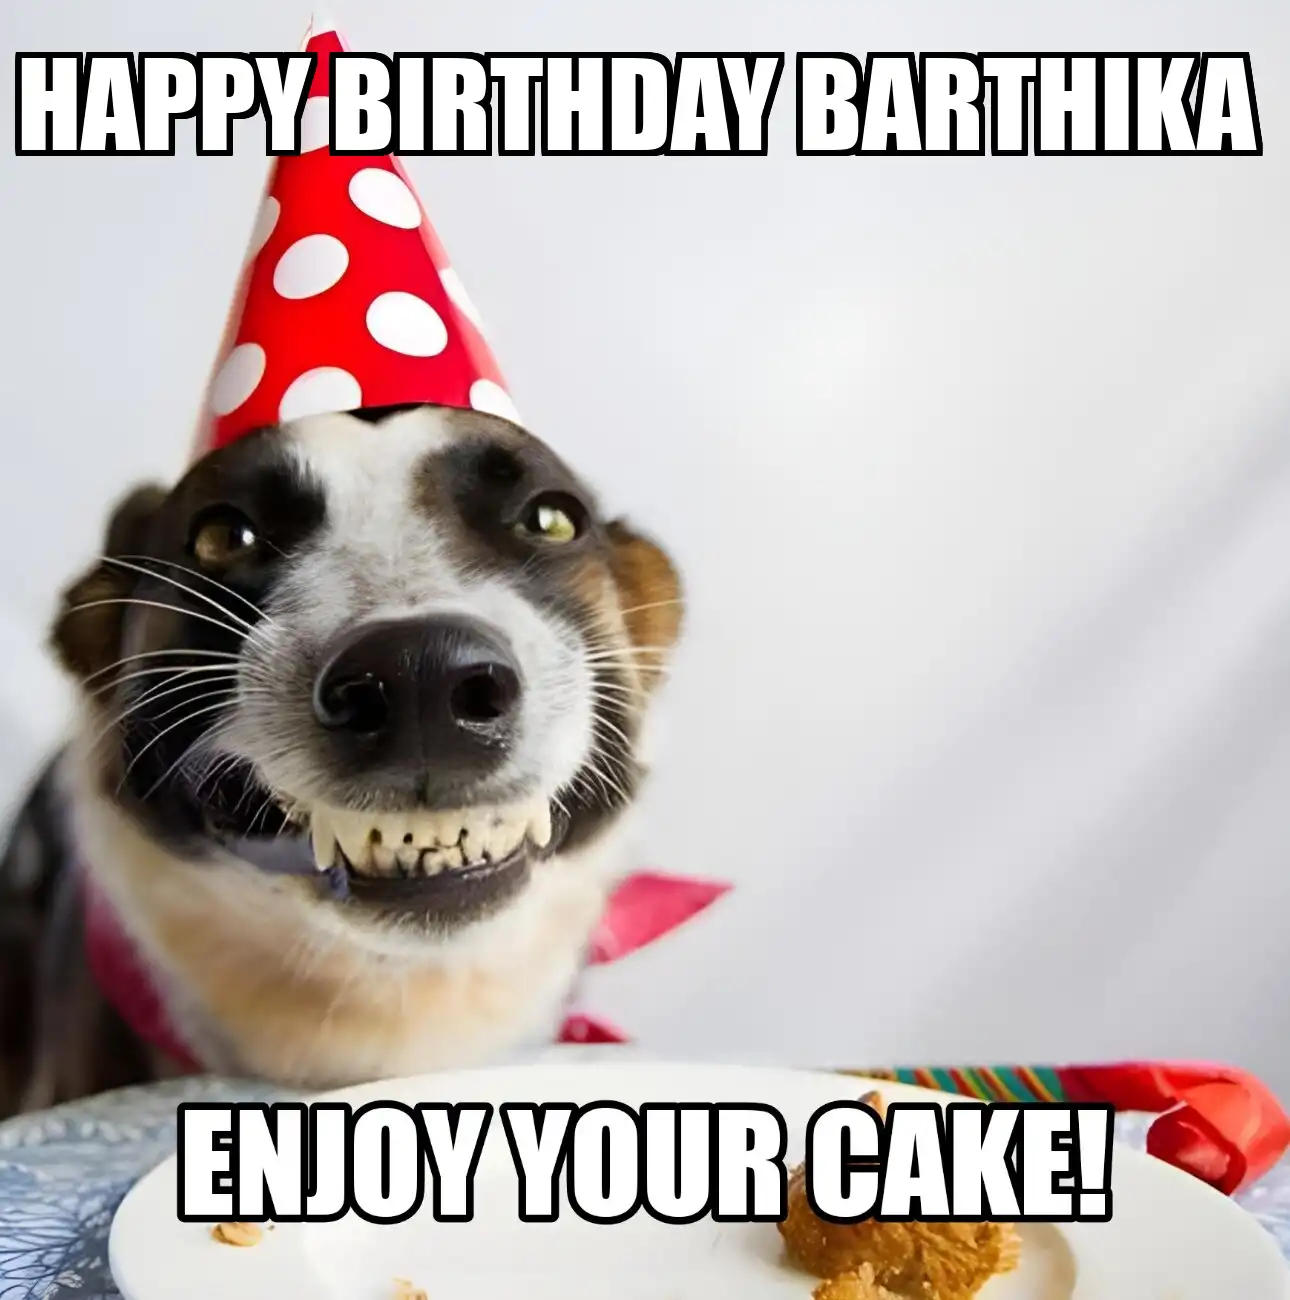 Happy Birthday Barthika Enjoy Your Cake Dog Meme